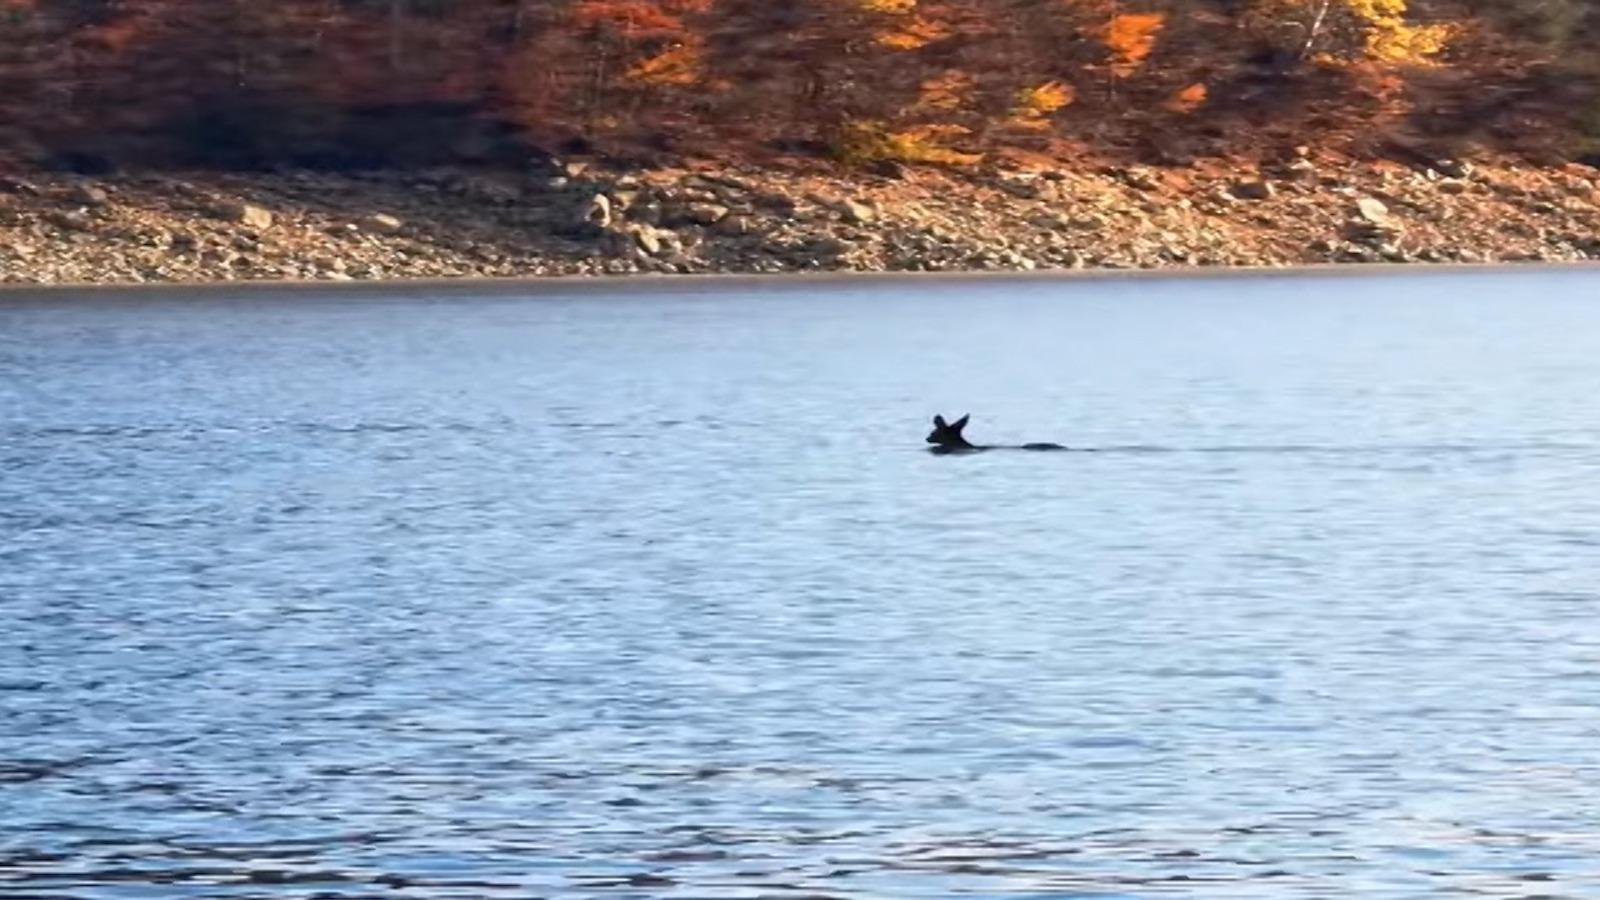  VIDEO O căprioară traversează înot Lacul Izvorul Muntelui